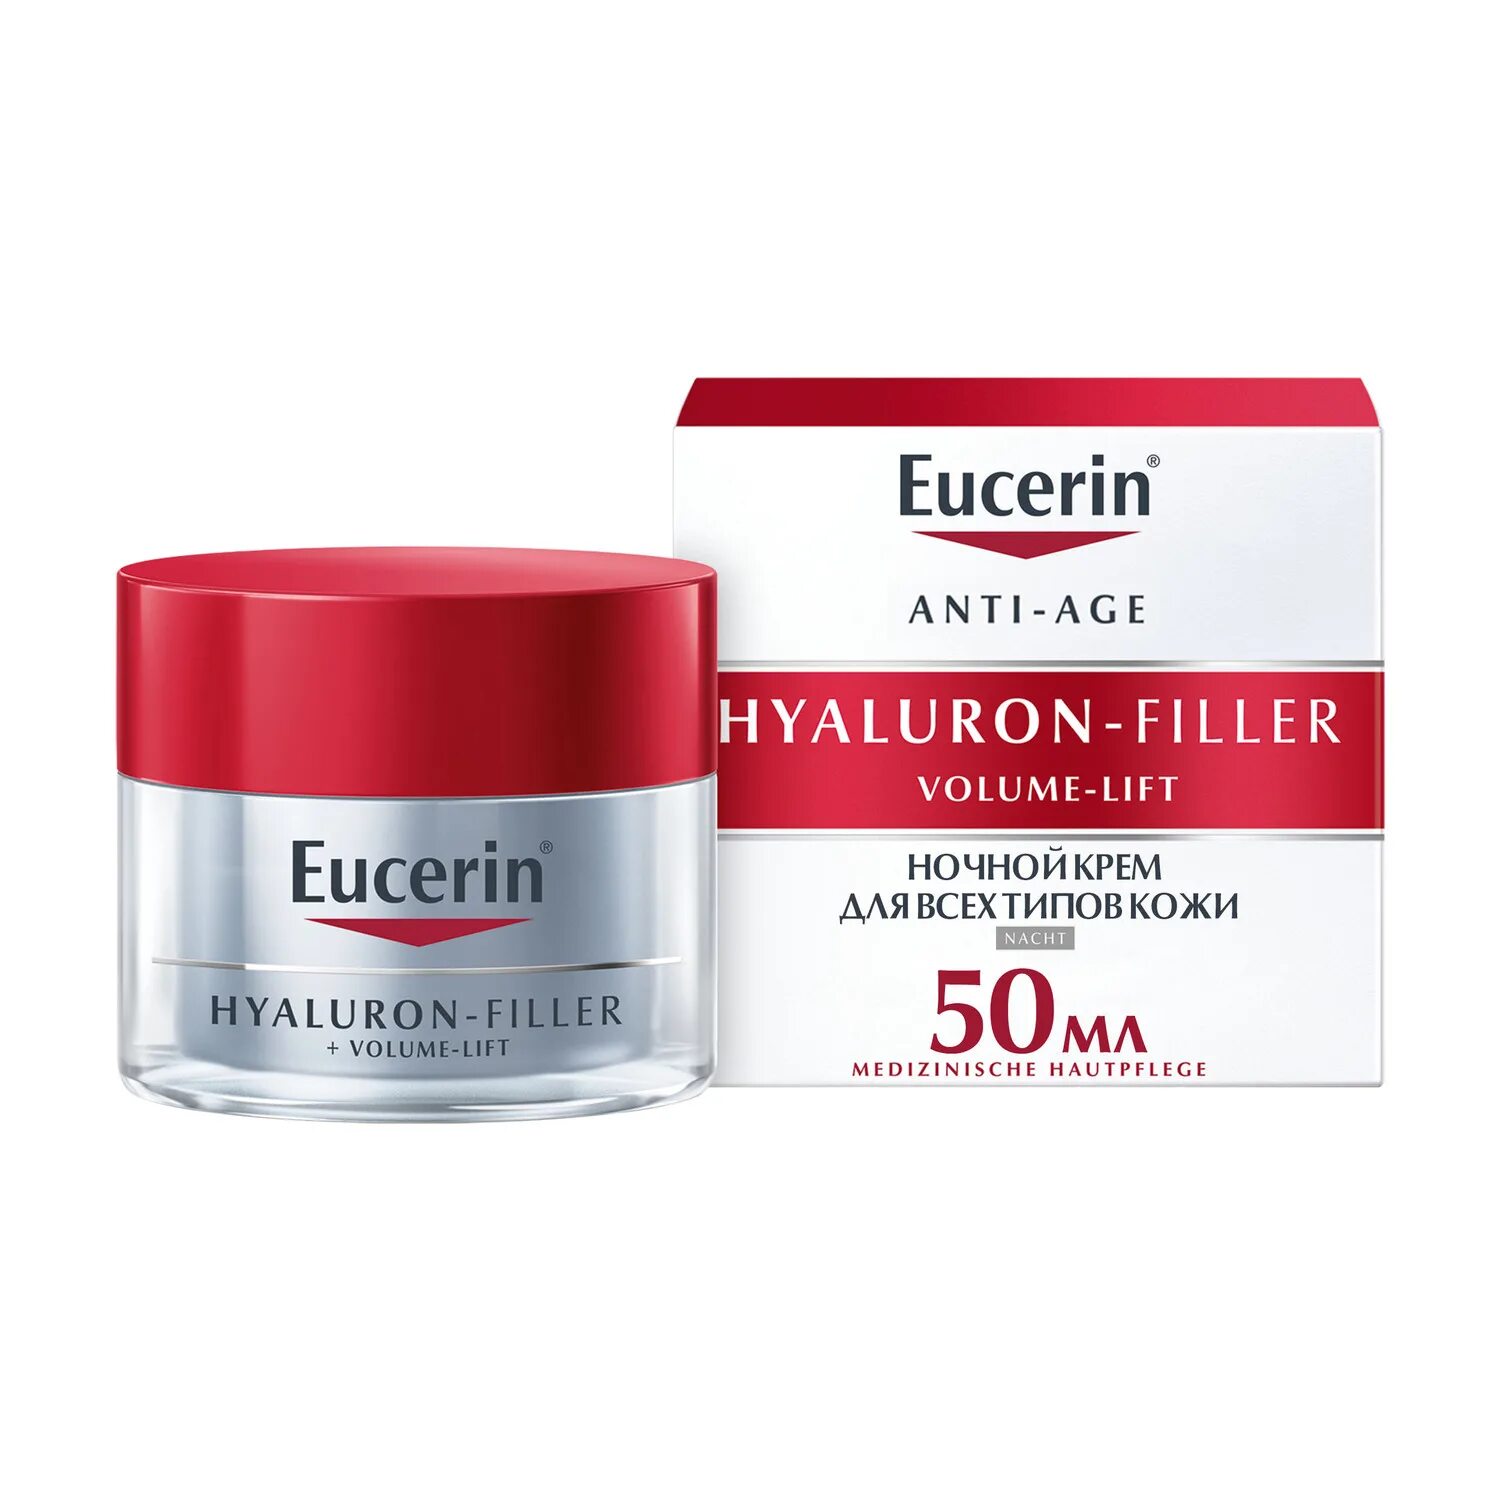 Крем Eucerin Hyaluron-Filler ночной 50 мл. Eucerin дневной крем. Крем Eucerin Hyaluron-Filler для лица дневной 50. Крем Eucerin Hyaluron-Filler + Volume-Lift ночной 50 мл.